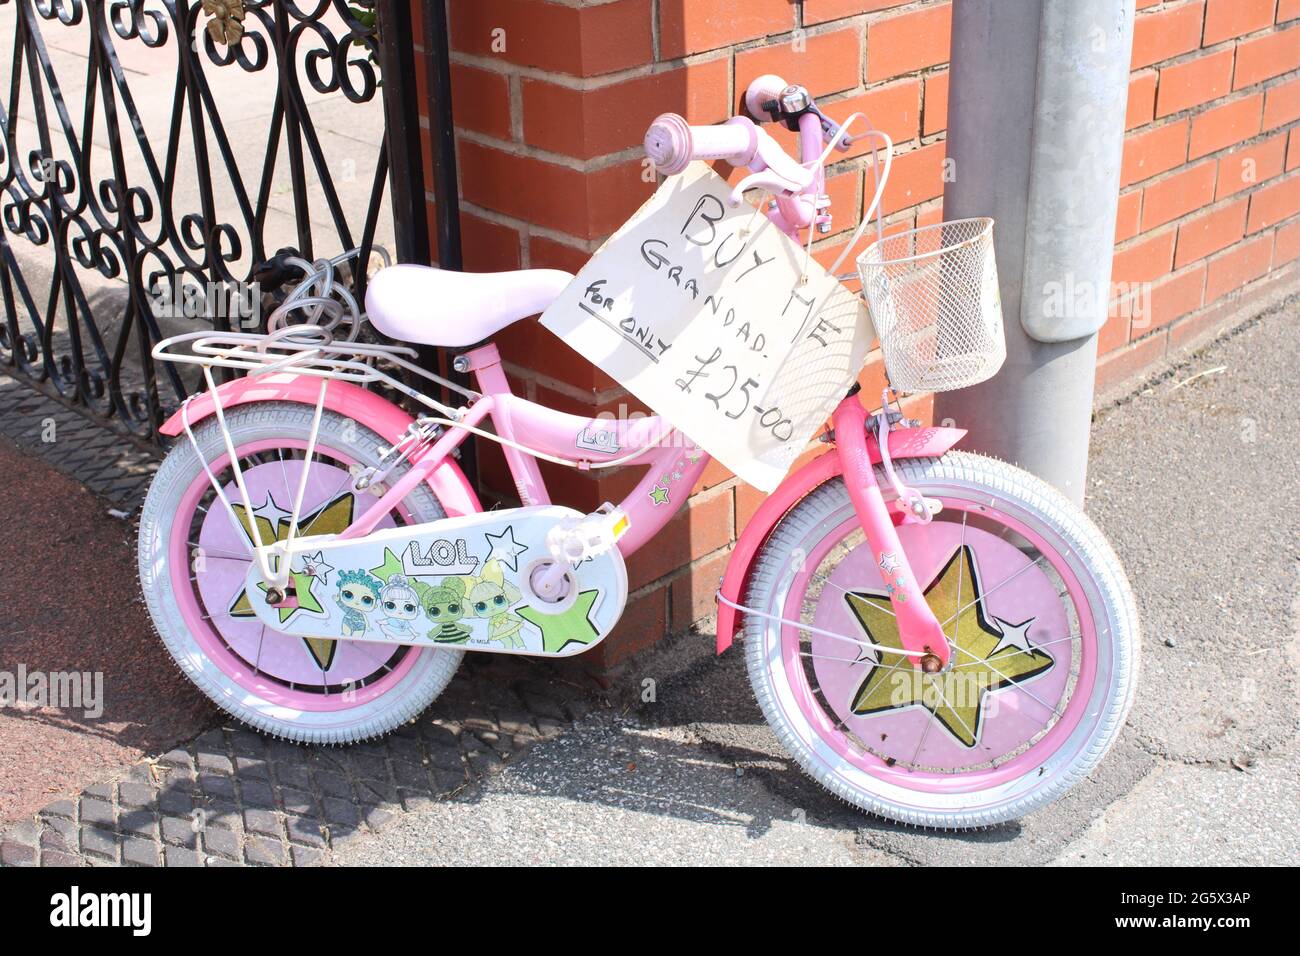 Kinder rosa Fahrrad mit Verkauf Schild mit der Aufschrift "Buy Me Granddad for only £25.00". Cleveres Werbekonzept Stockfoto